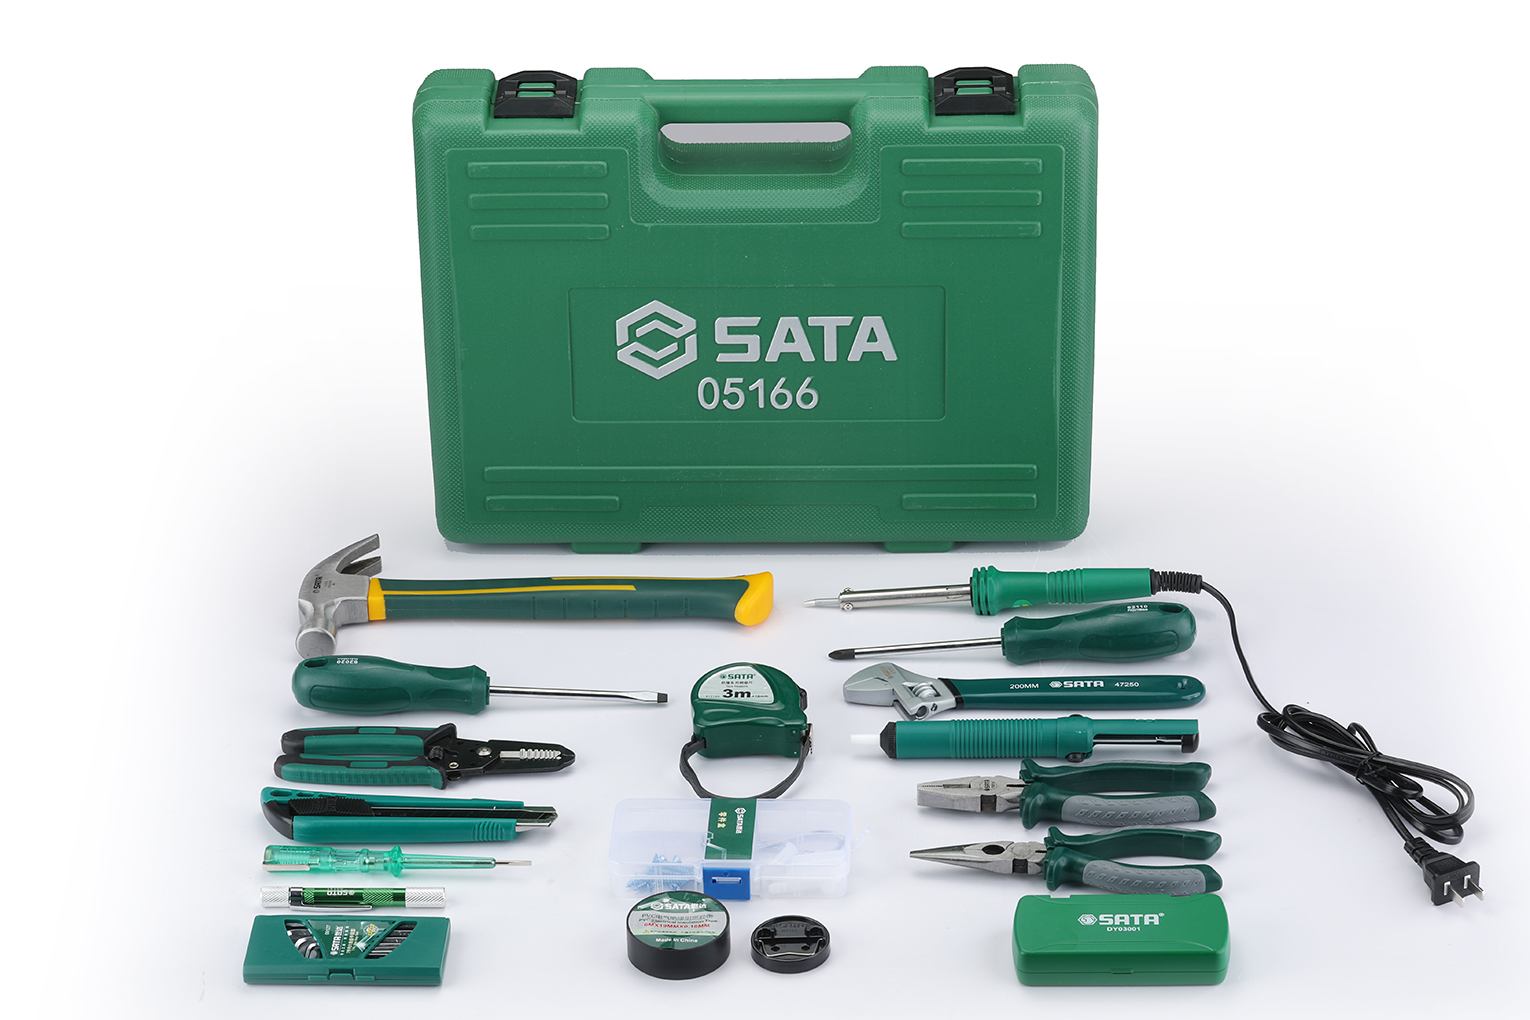 ชุดเครื่องมือ ที่ครอบคลุม งานซ่อมบำรุง เครื่องใช้ไฟฟ้า SATA